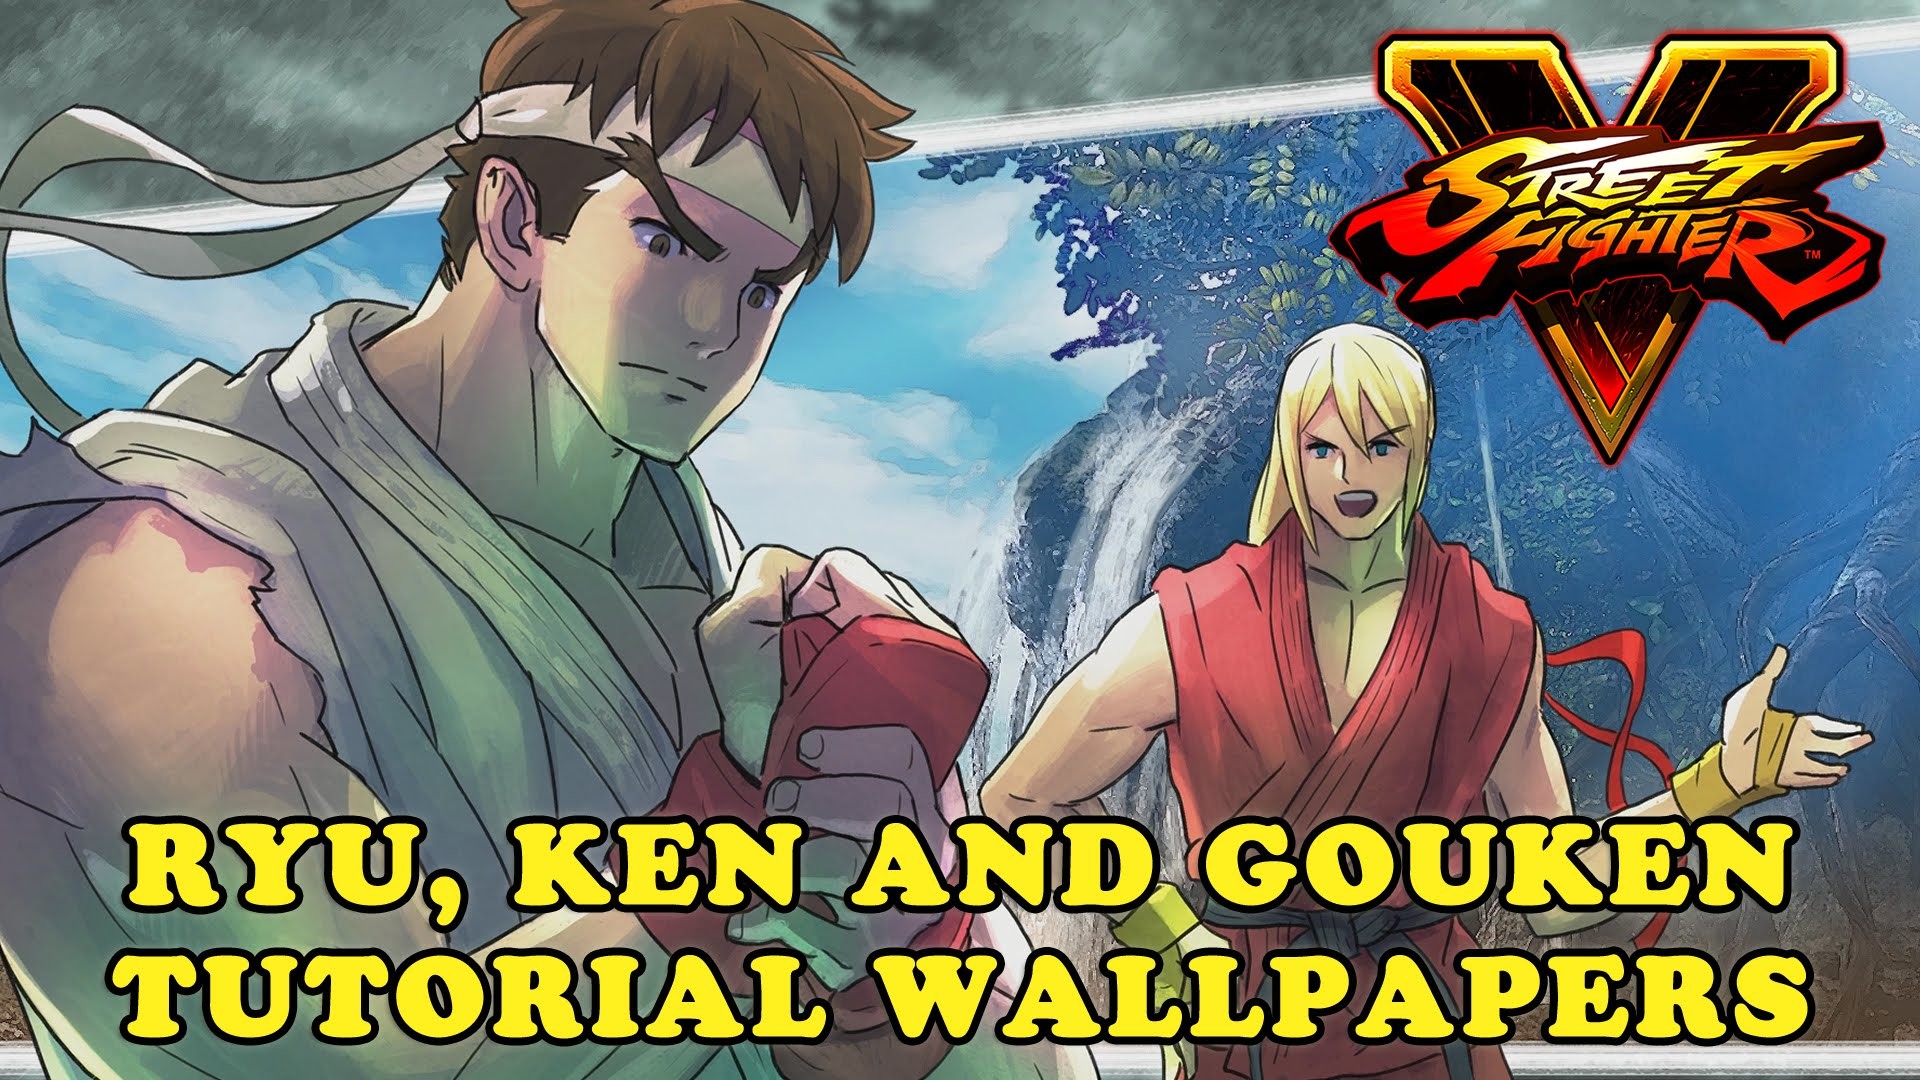 1920x1080 Street Fighter V - Ryu, Ken and Gouken Tutorial Wallpapers/Screenshots  (Download Link)